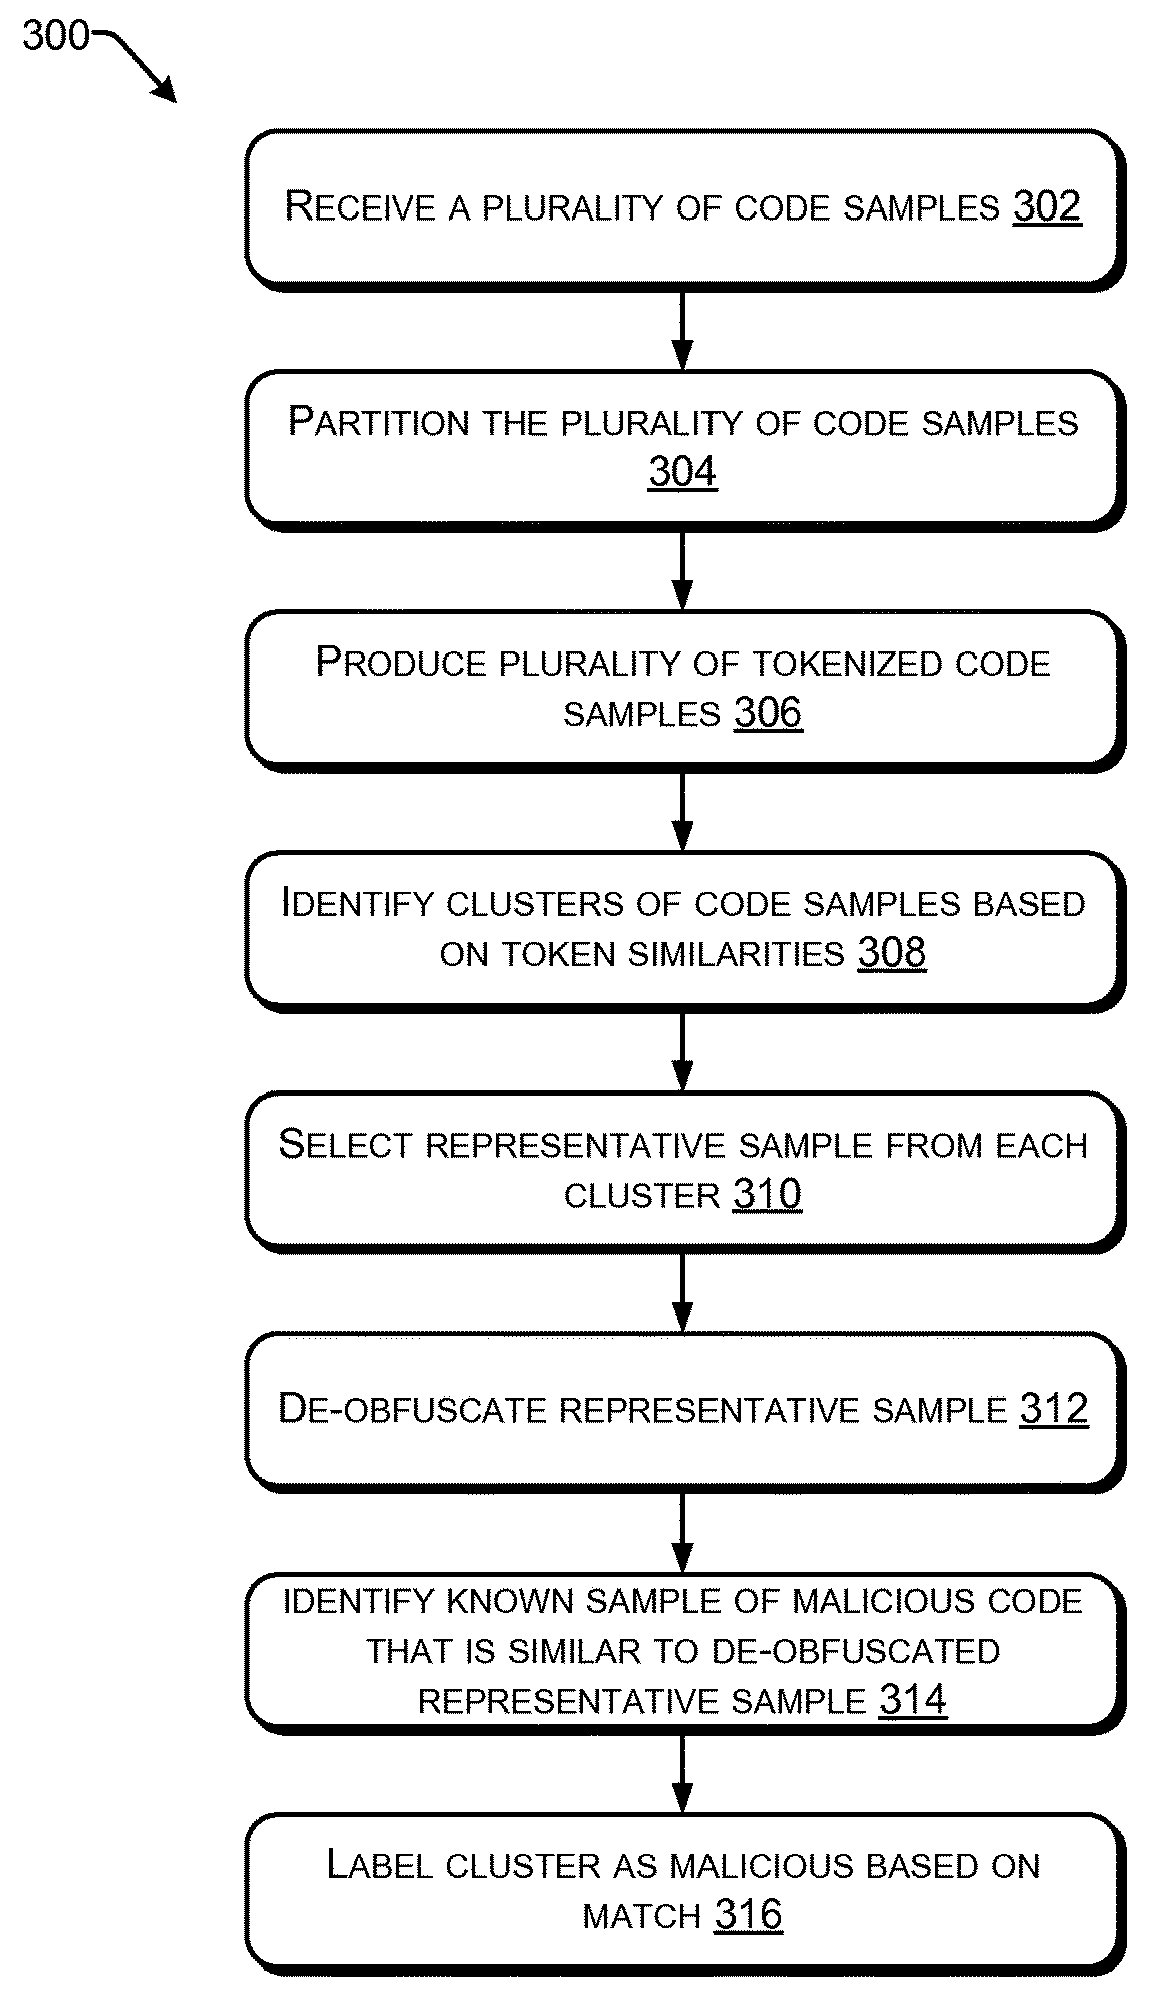 Code labeling based on tokenized code samples